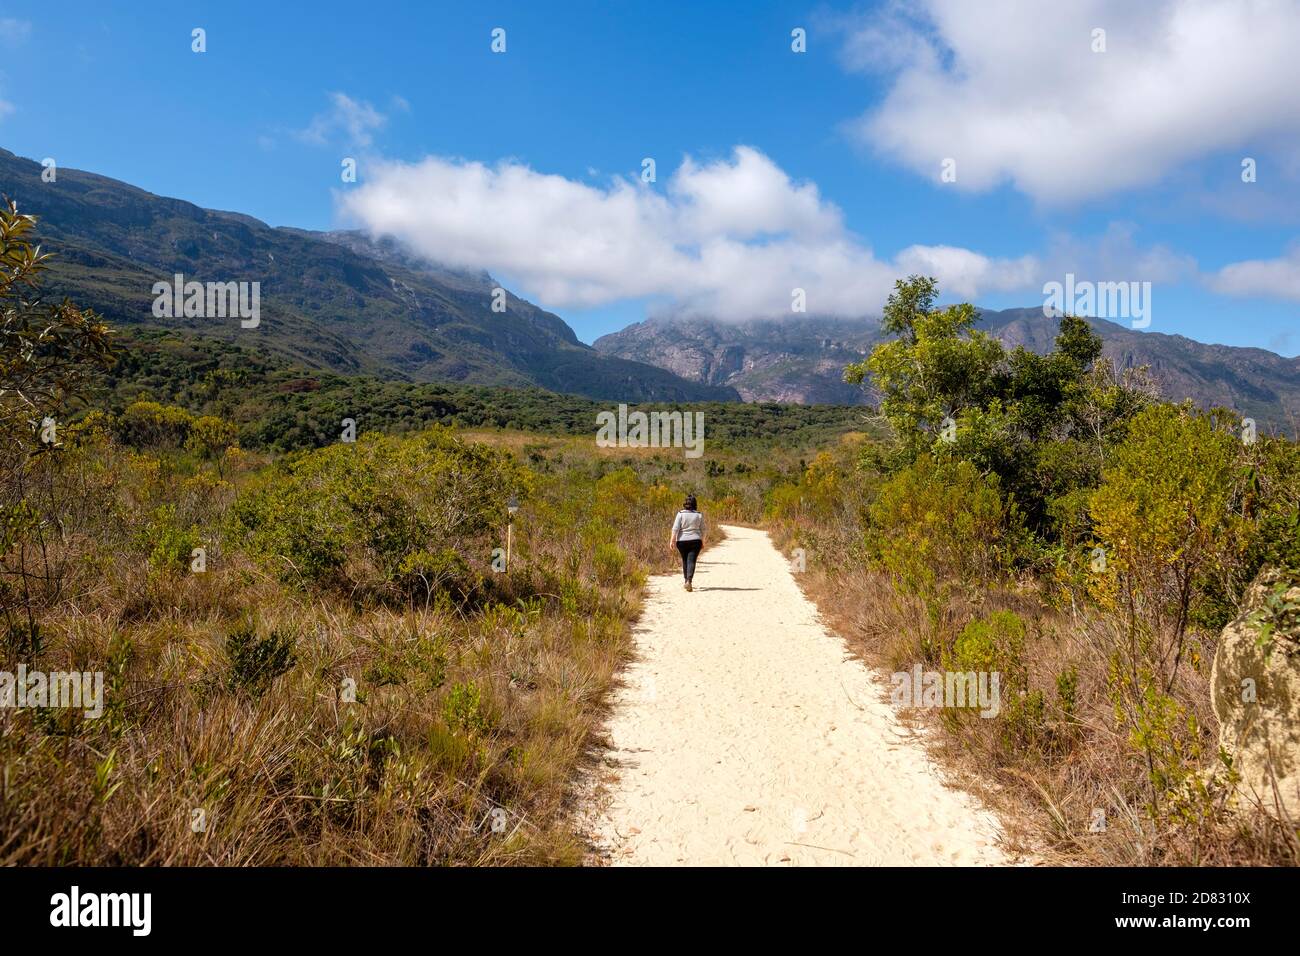 Brasilianische cerrado Savanne Landschaft und Vegetation, einsame Frau zu Fuß einen Weg in Santuario do Caraca, Minas Gerais, Brasilien. Stockfoto